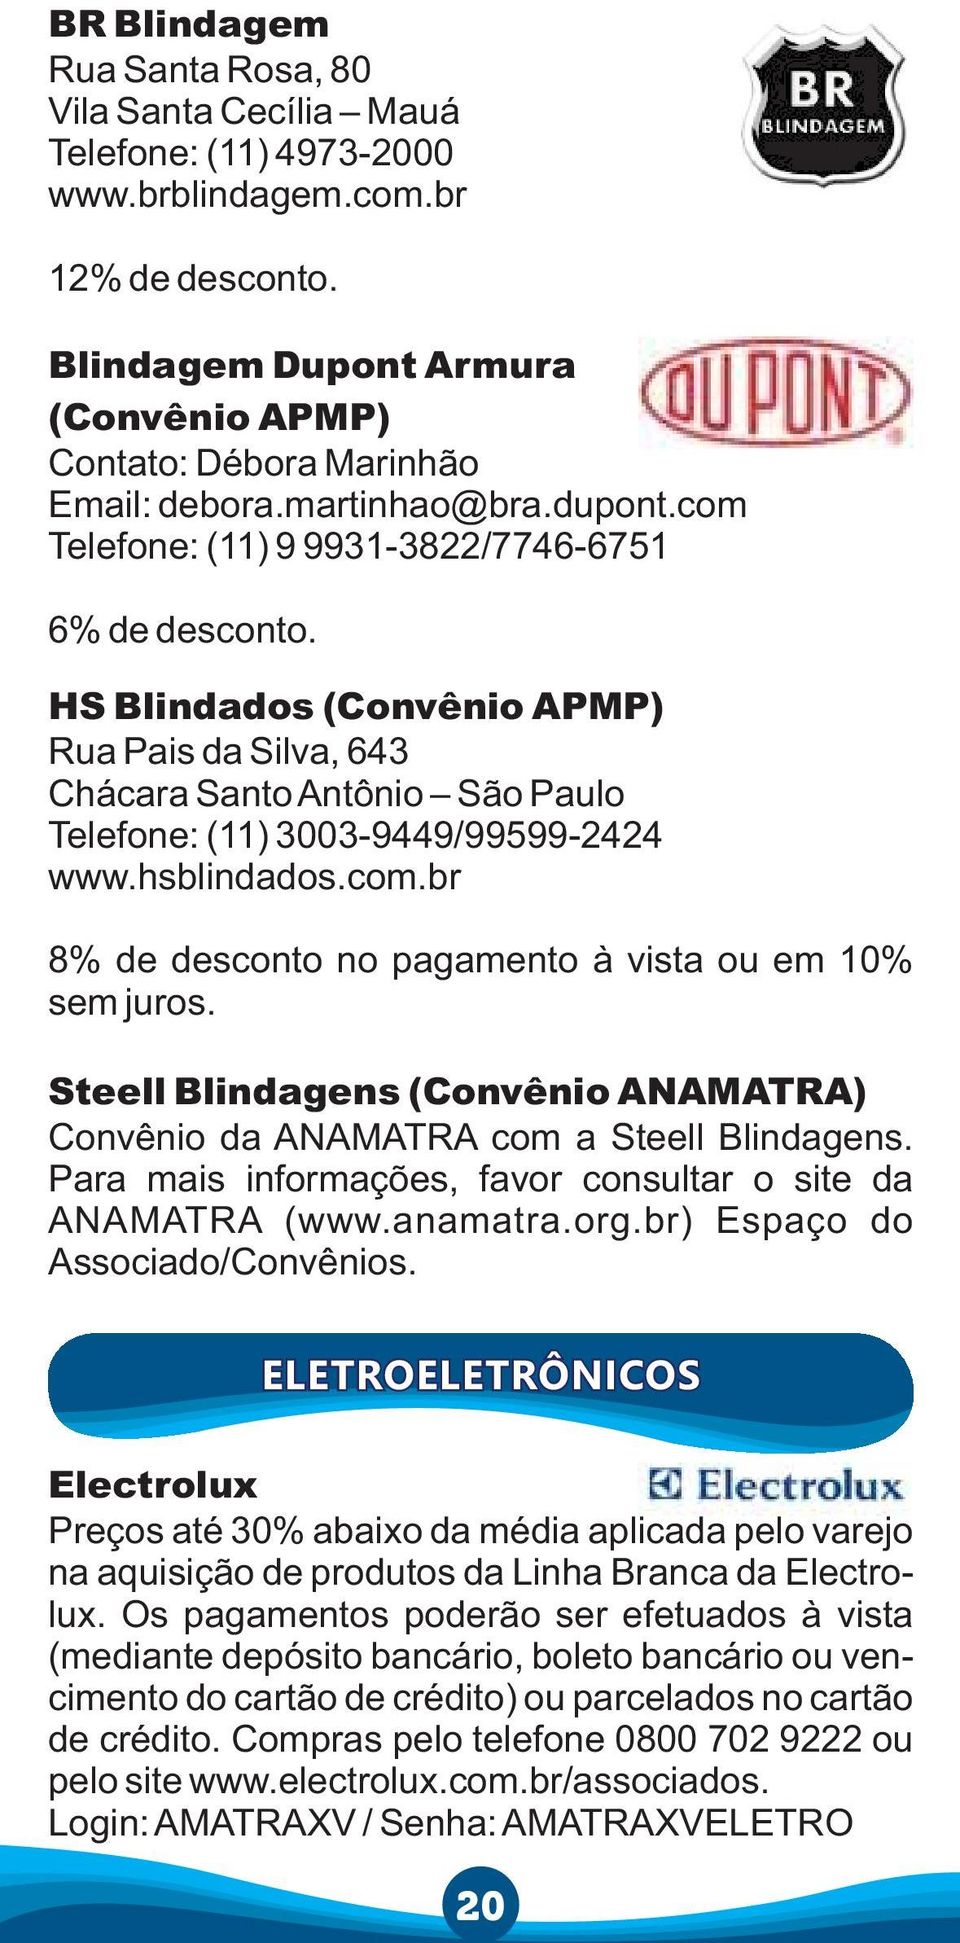 Steell Blindagens (Convênio ANAMATRA) Convênio da ANAMATRA com a Steell Blindagens. Para mais informações, favor consultar o site da ANAMATRA (www.anamatra.org.br) Espaço do Associado/Convênios.